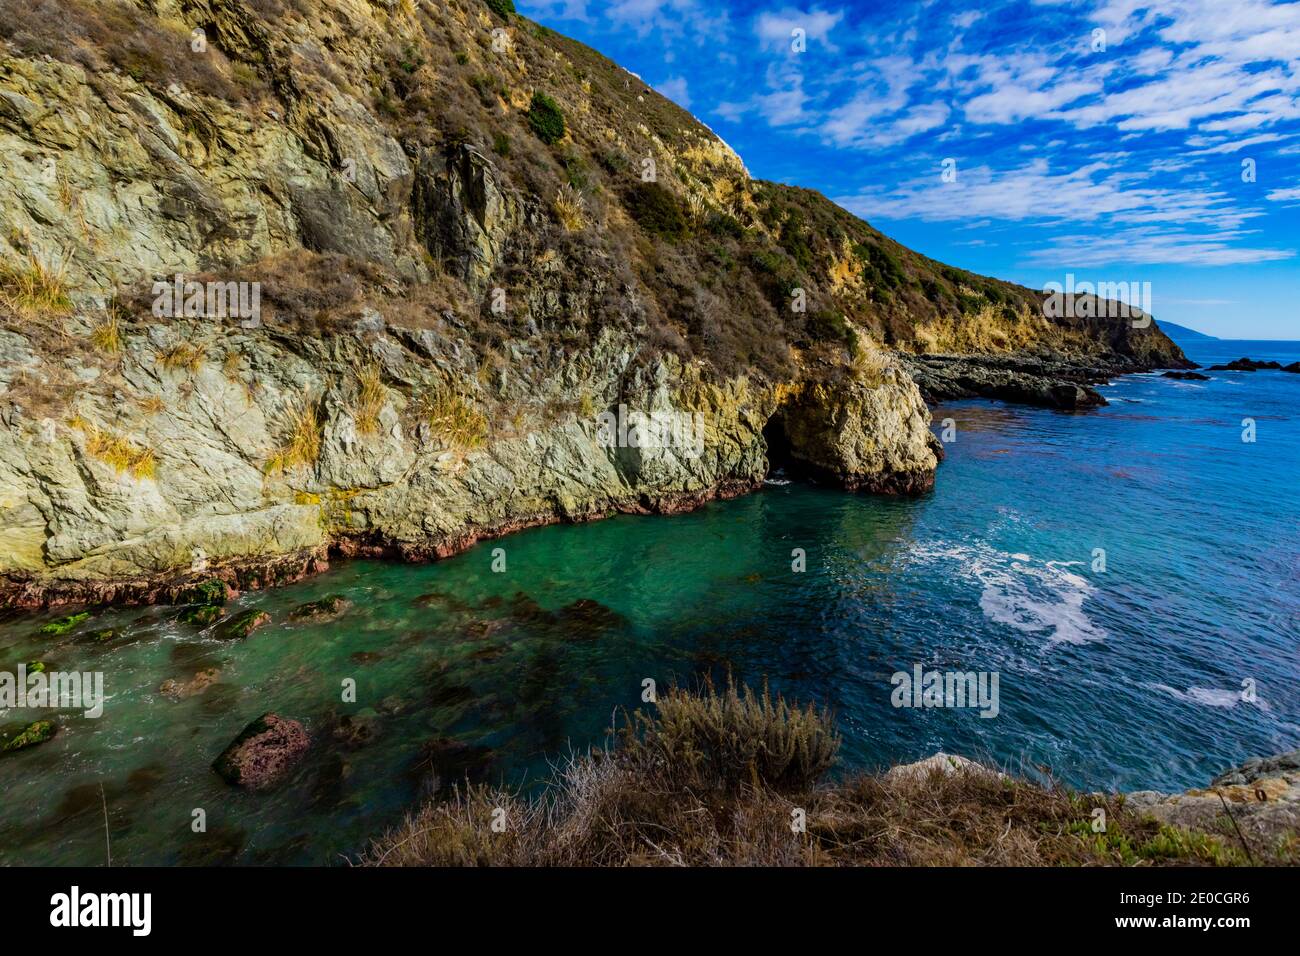 Das wunderschöne versteckte Juwel von Partington Cove am Highway 1, Big Sur, Kalifornien, USA Stockfoto